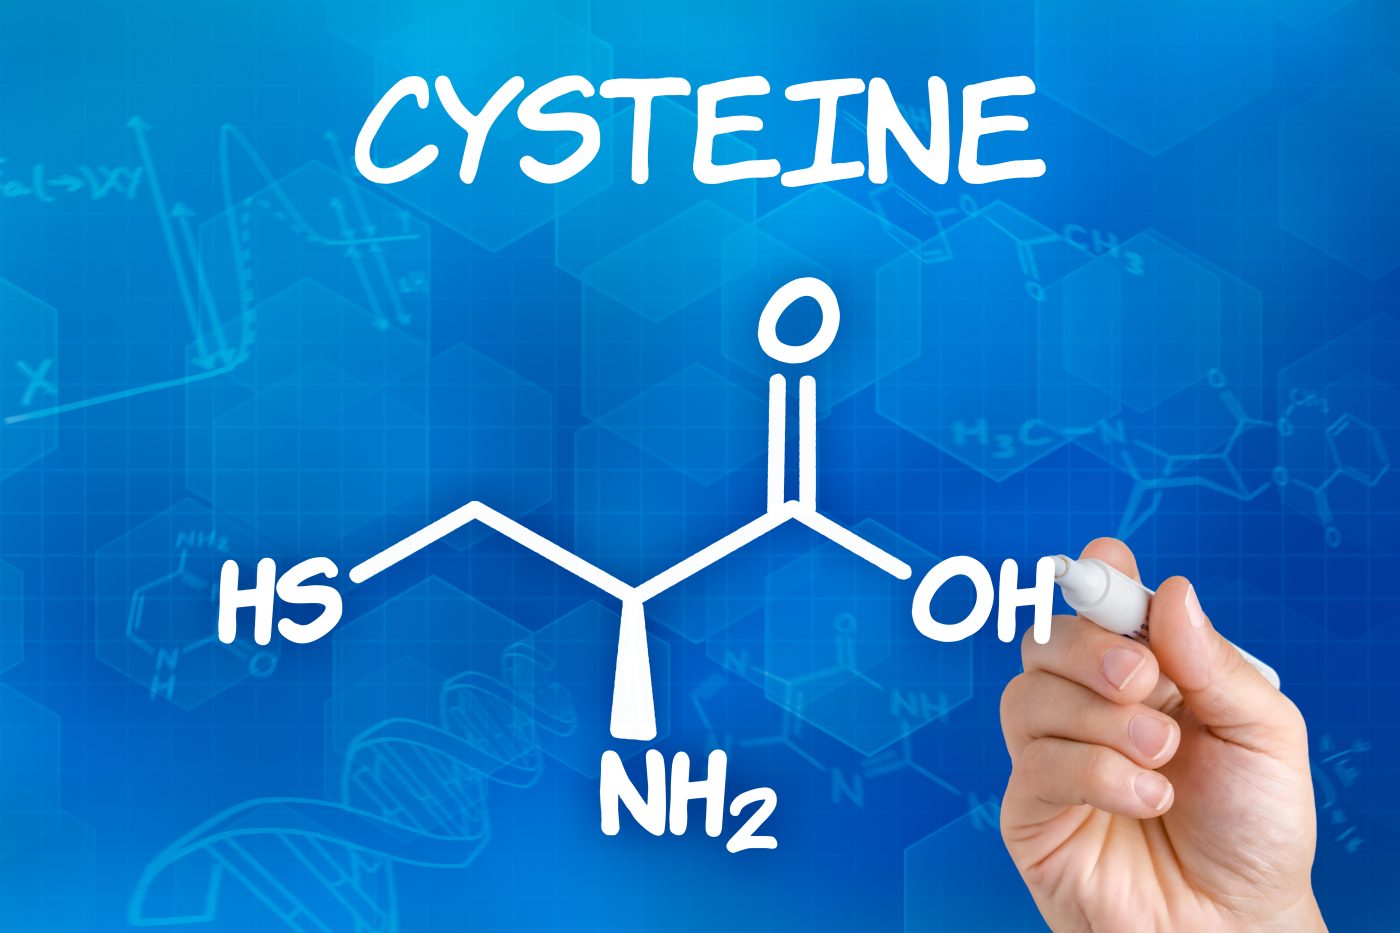 low cysteine, oxidative stress linked to Huntington's